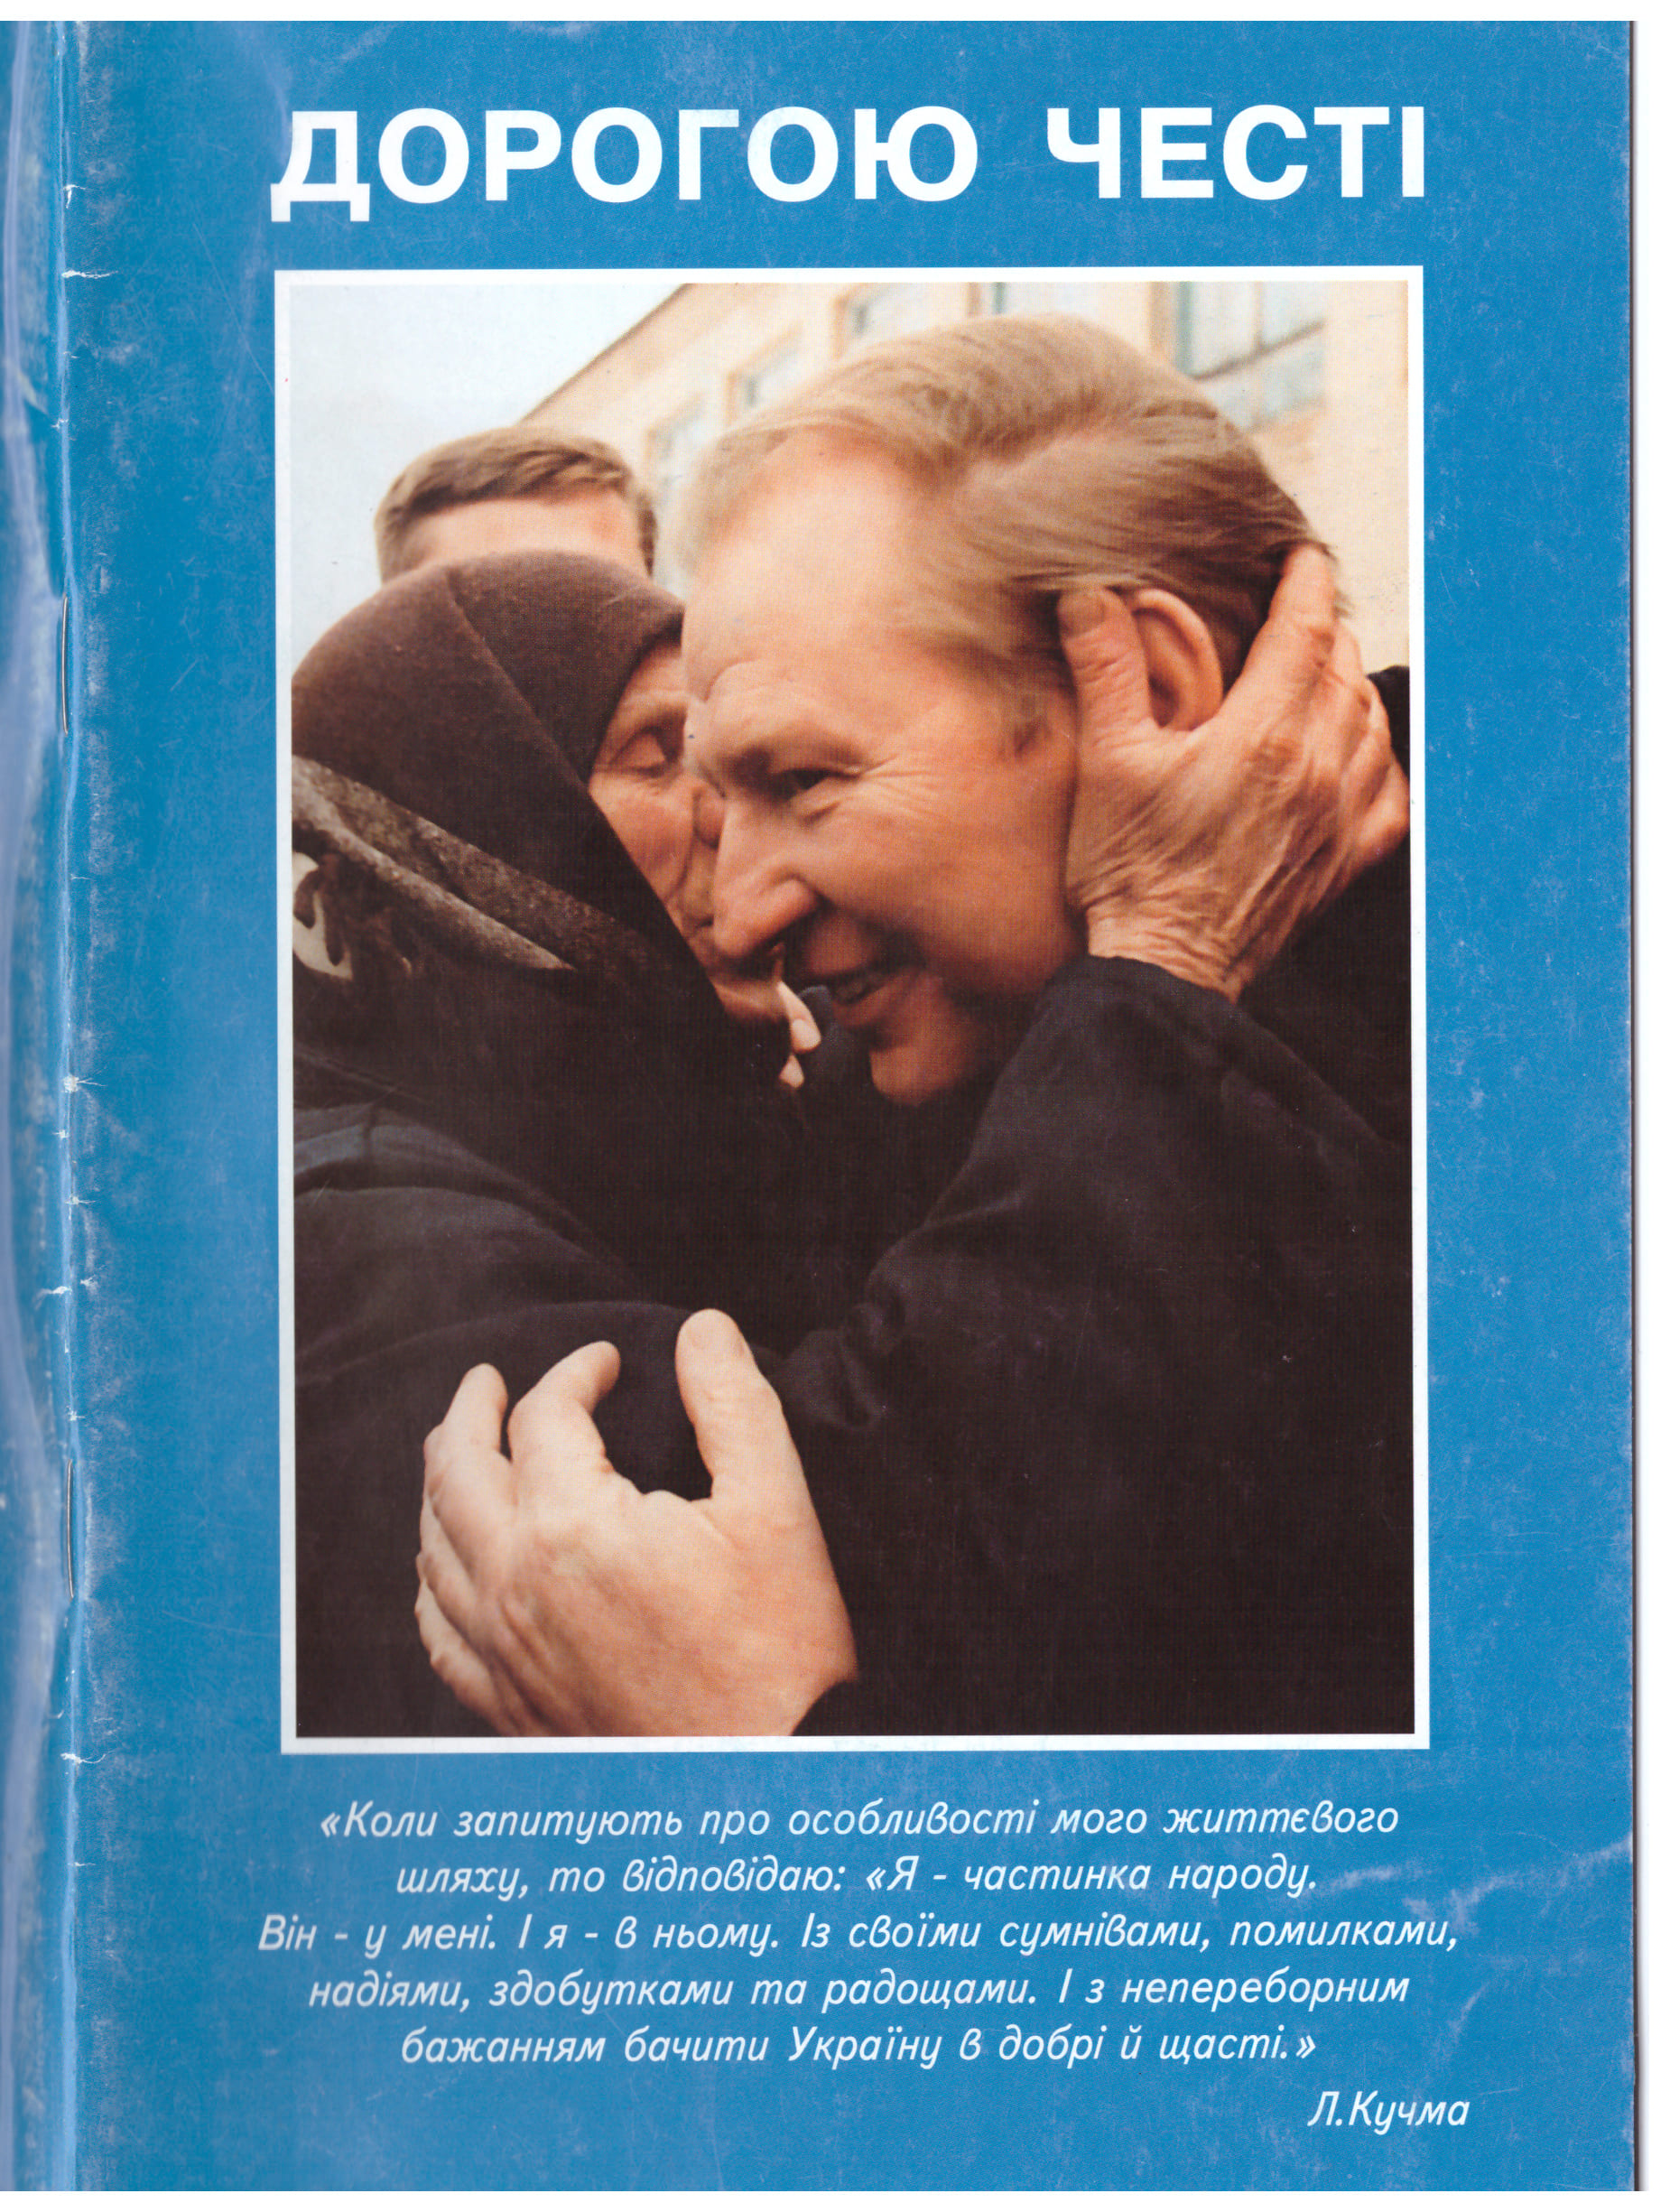 Украине 30: президентские выборы и миссия в Косово: чем запомнился 1999 год — фото